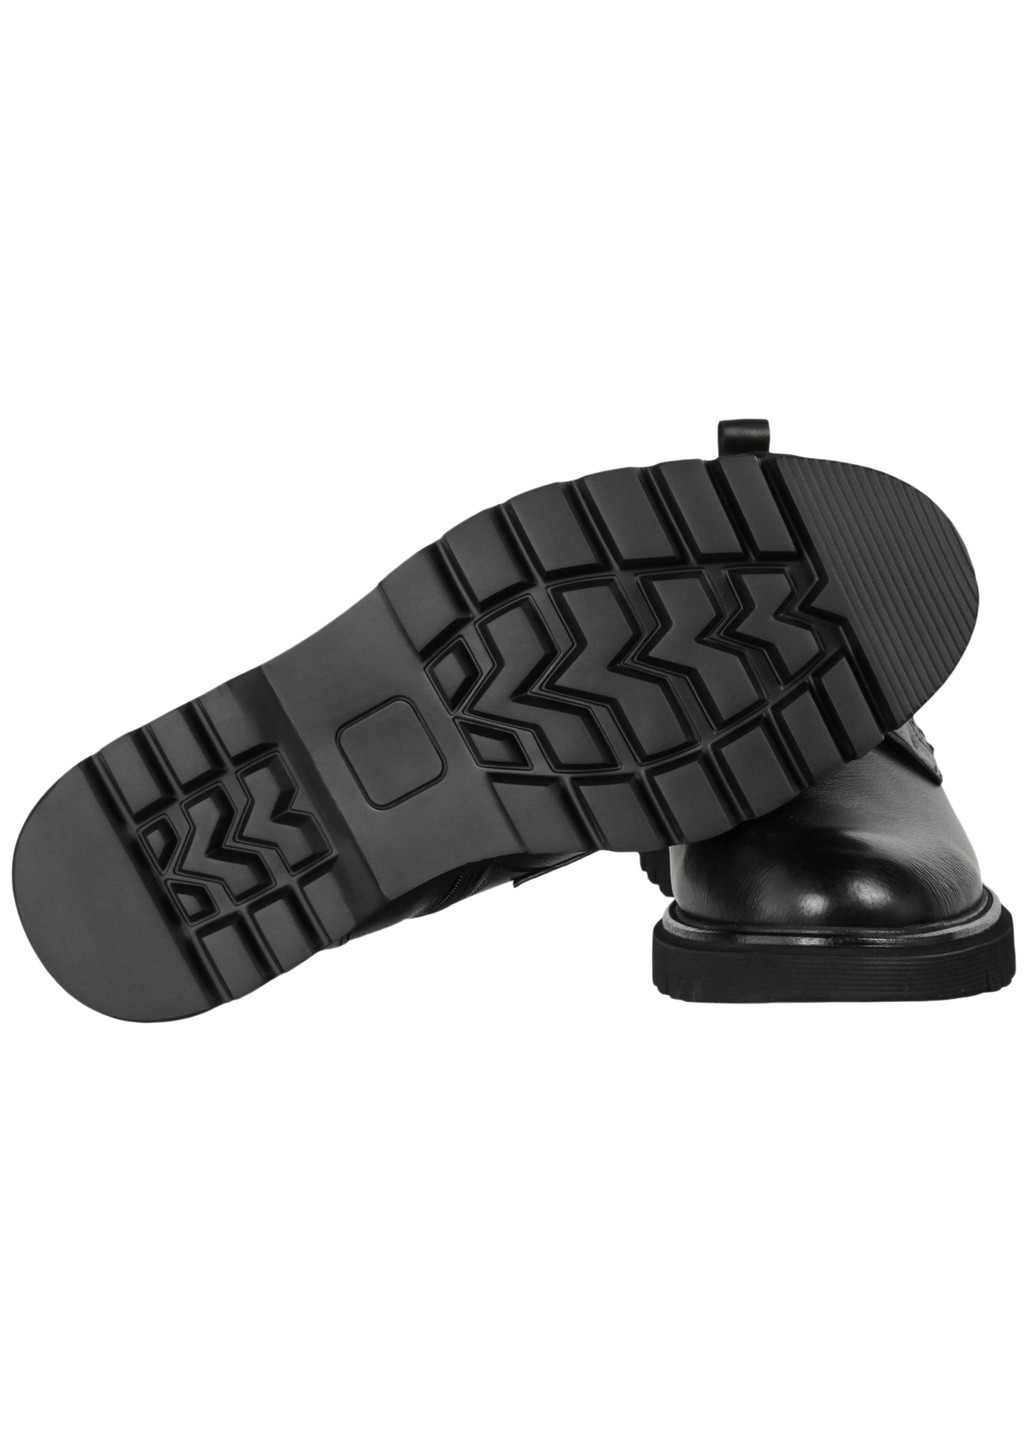 Черные зимние мужские ботинки классические 199647 Cosottinni